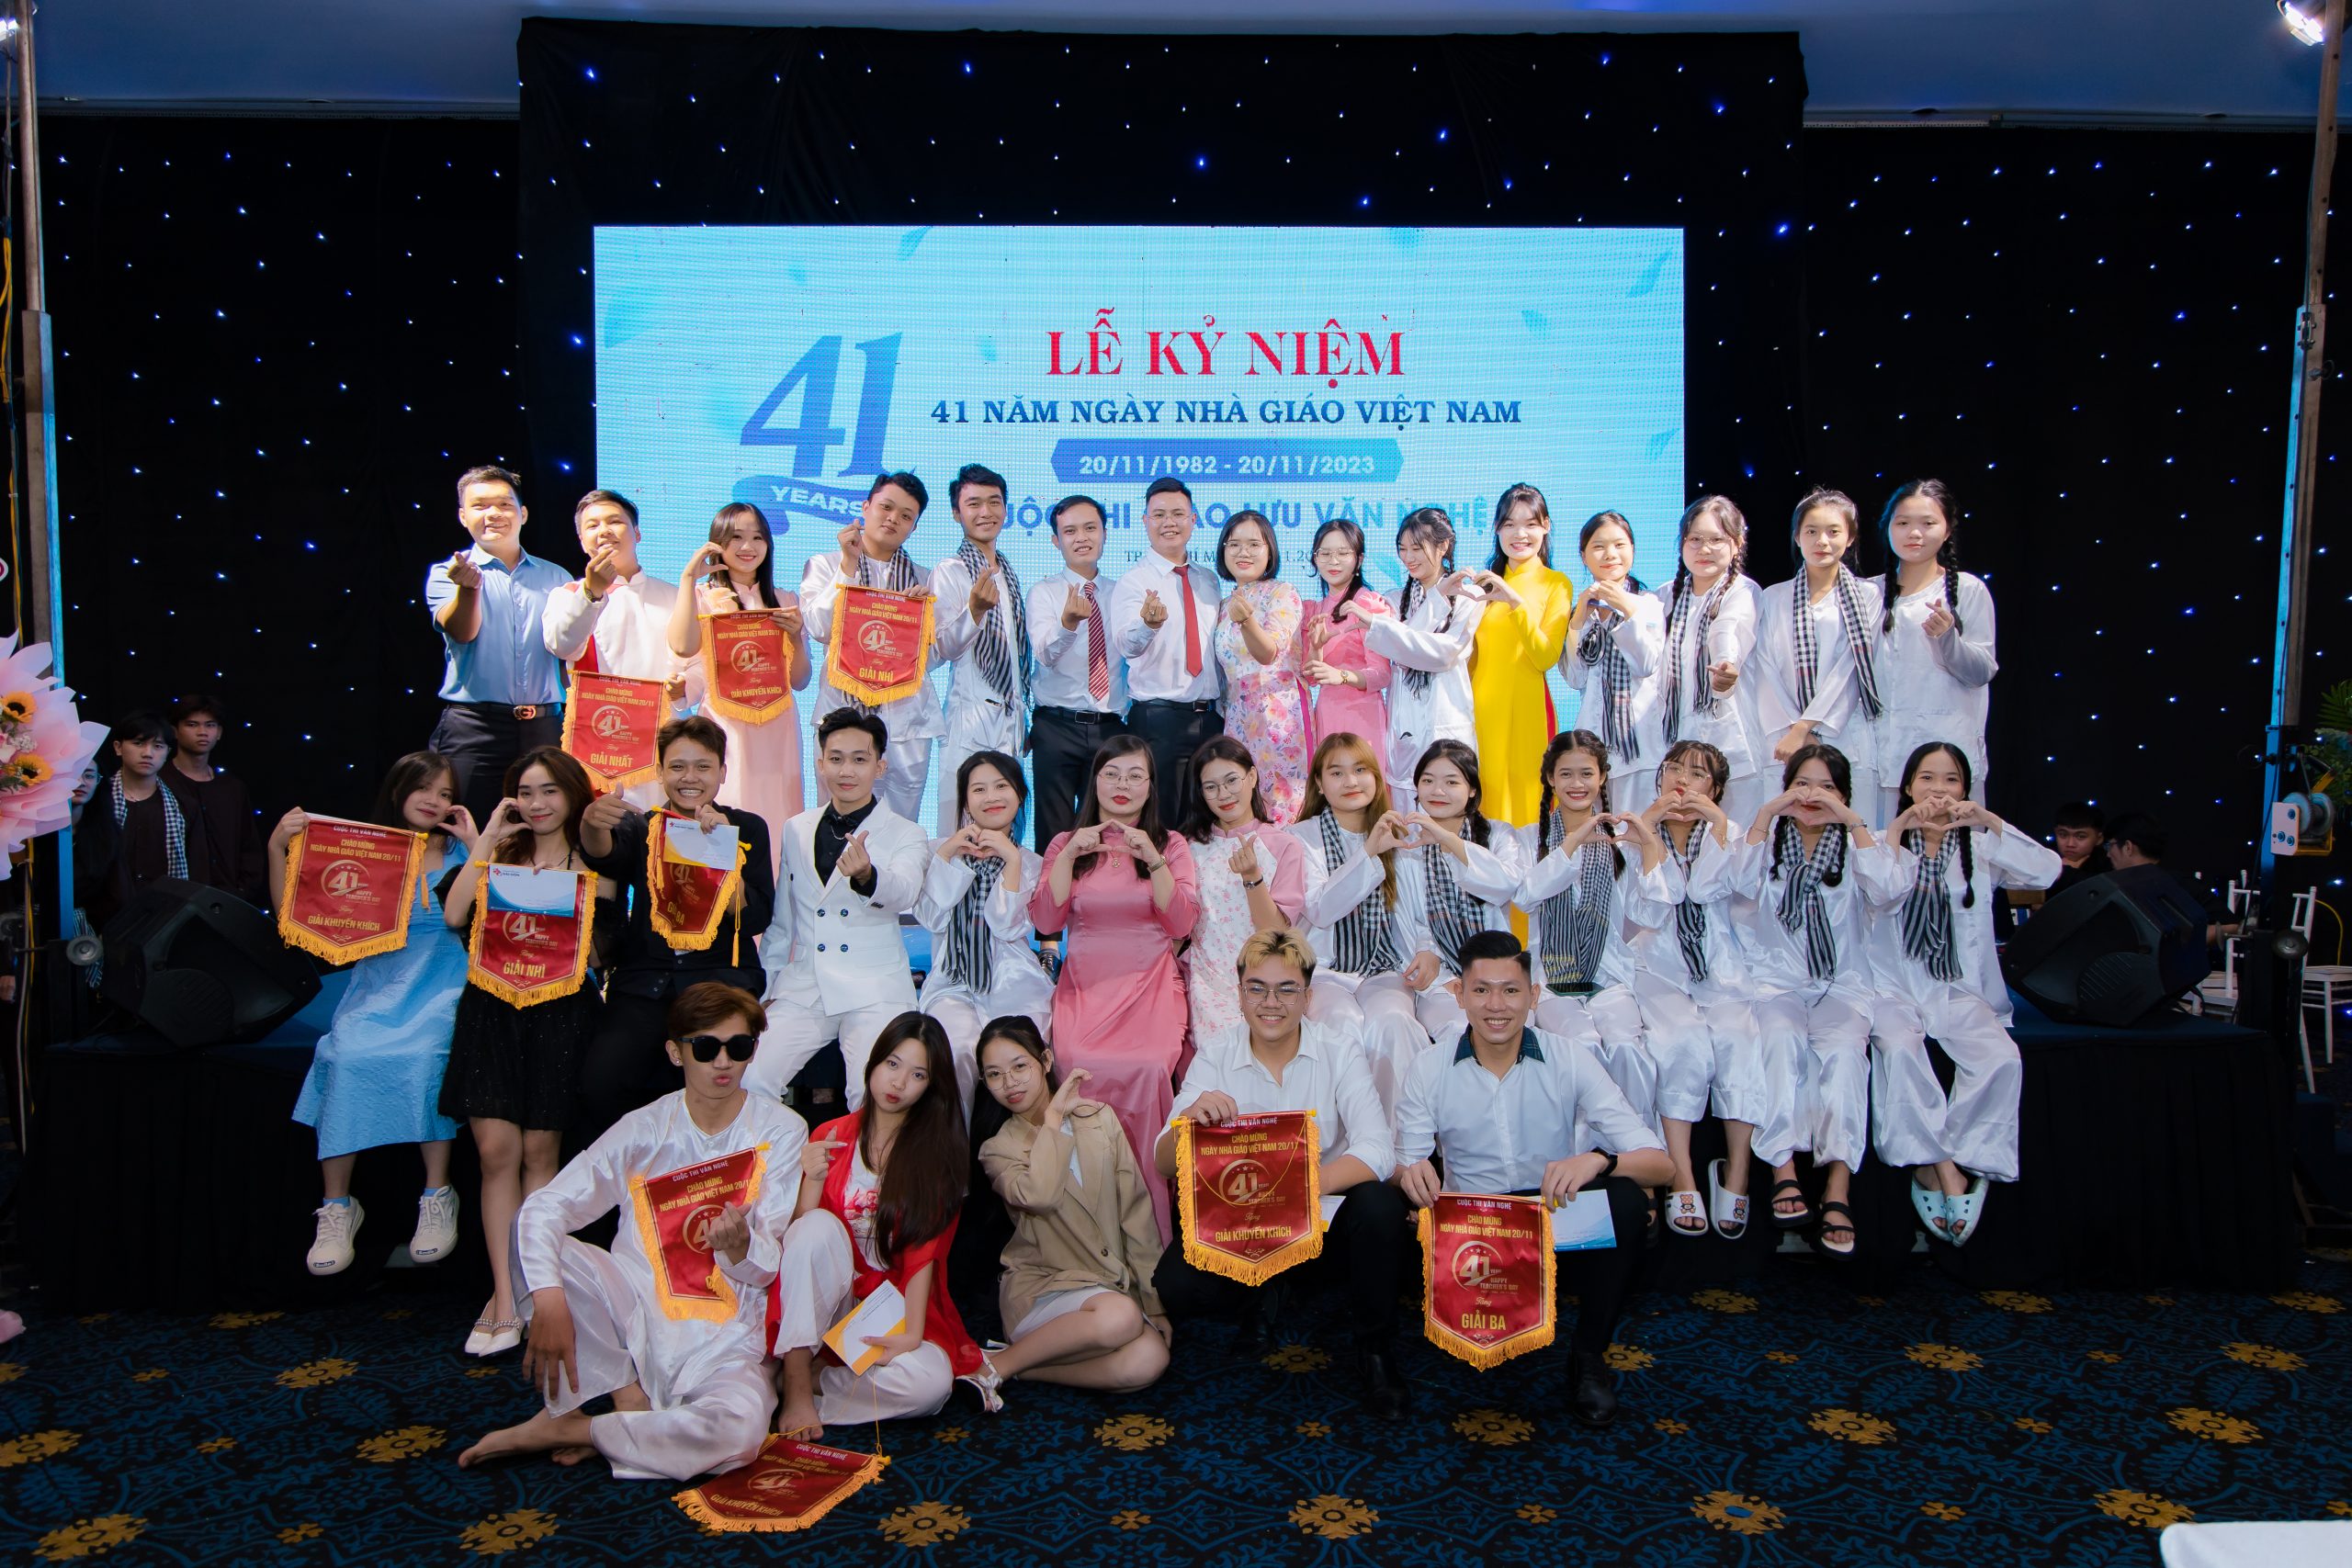 Lễ kỷ niệm 41 năm Ngày nhà giáo Việt Nam (20/11/1982 – 20/11/2023)